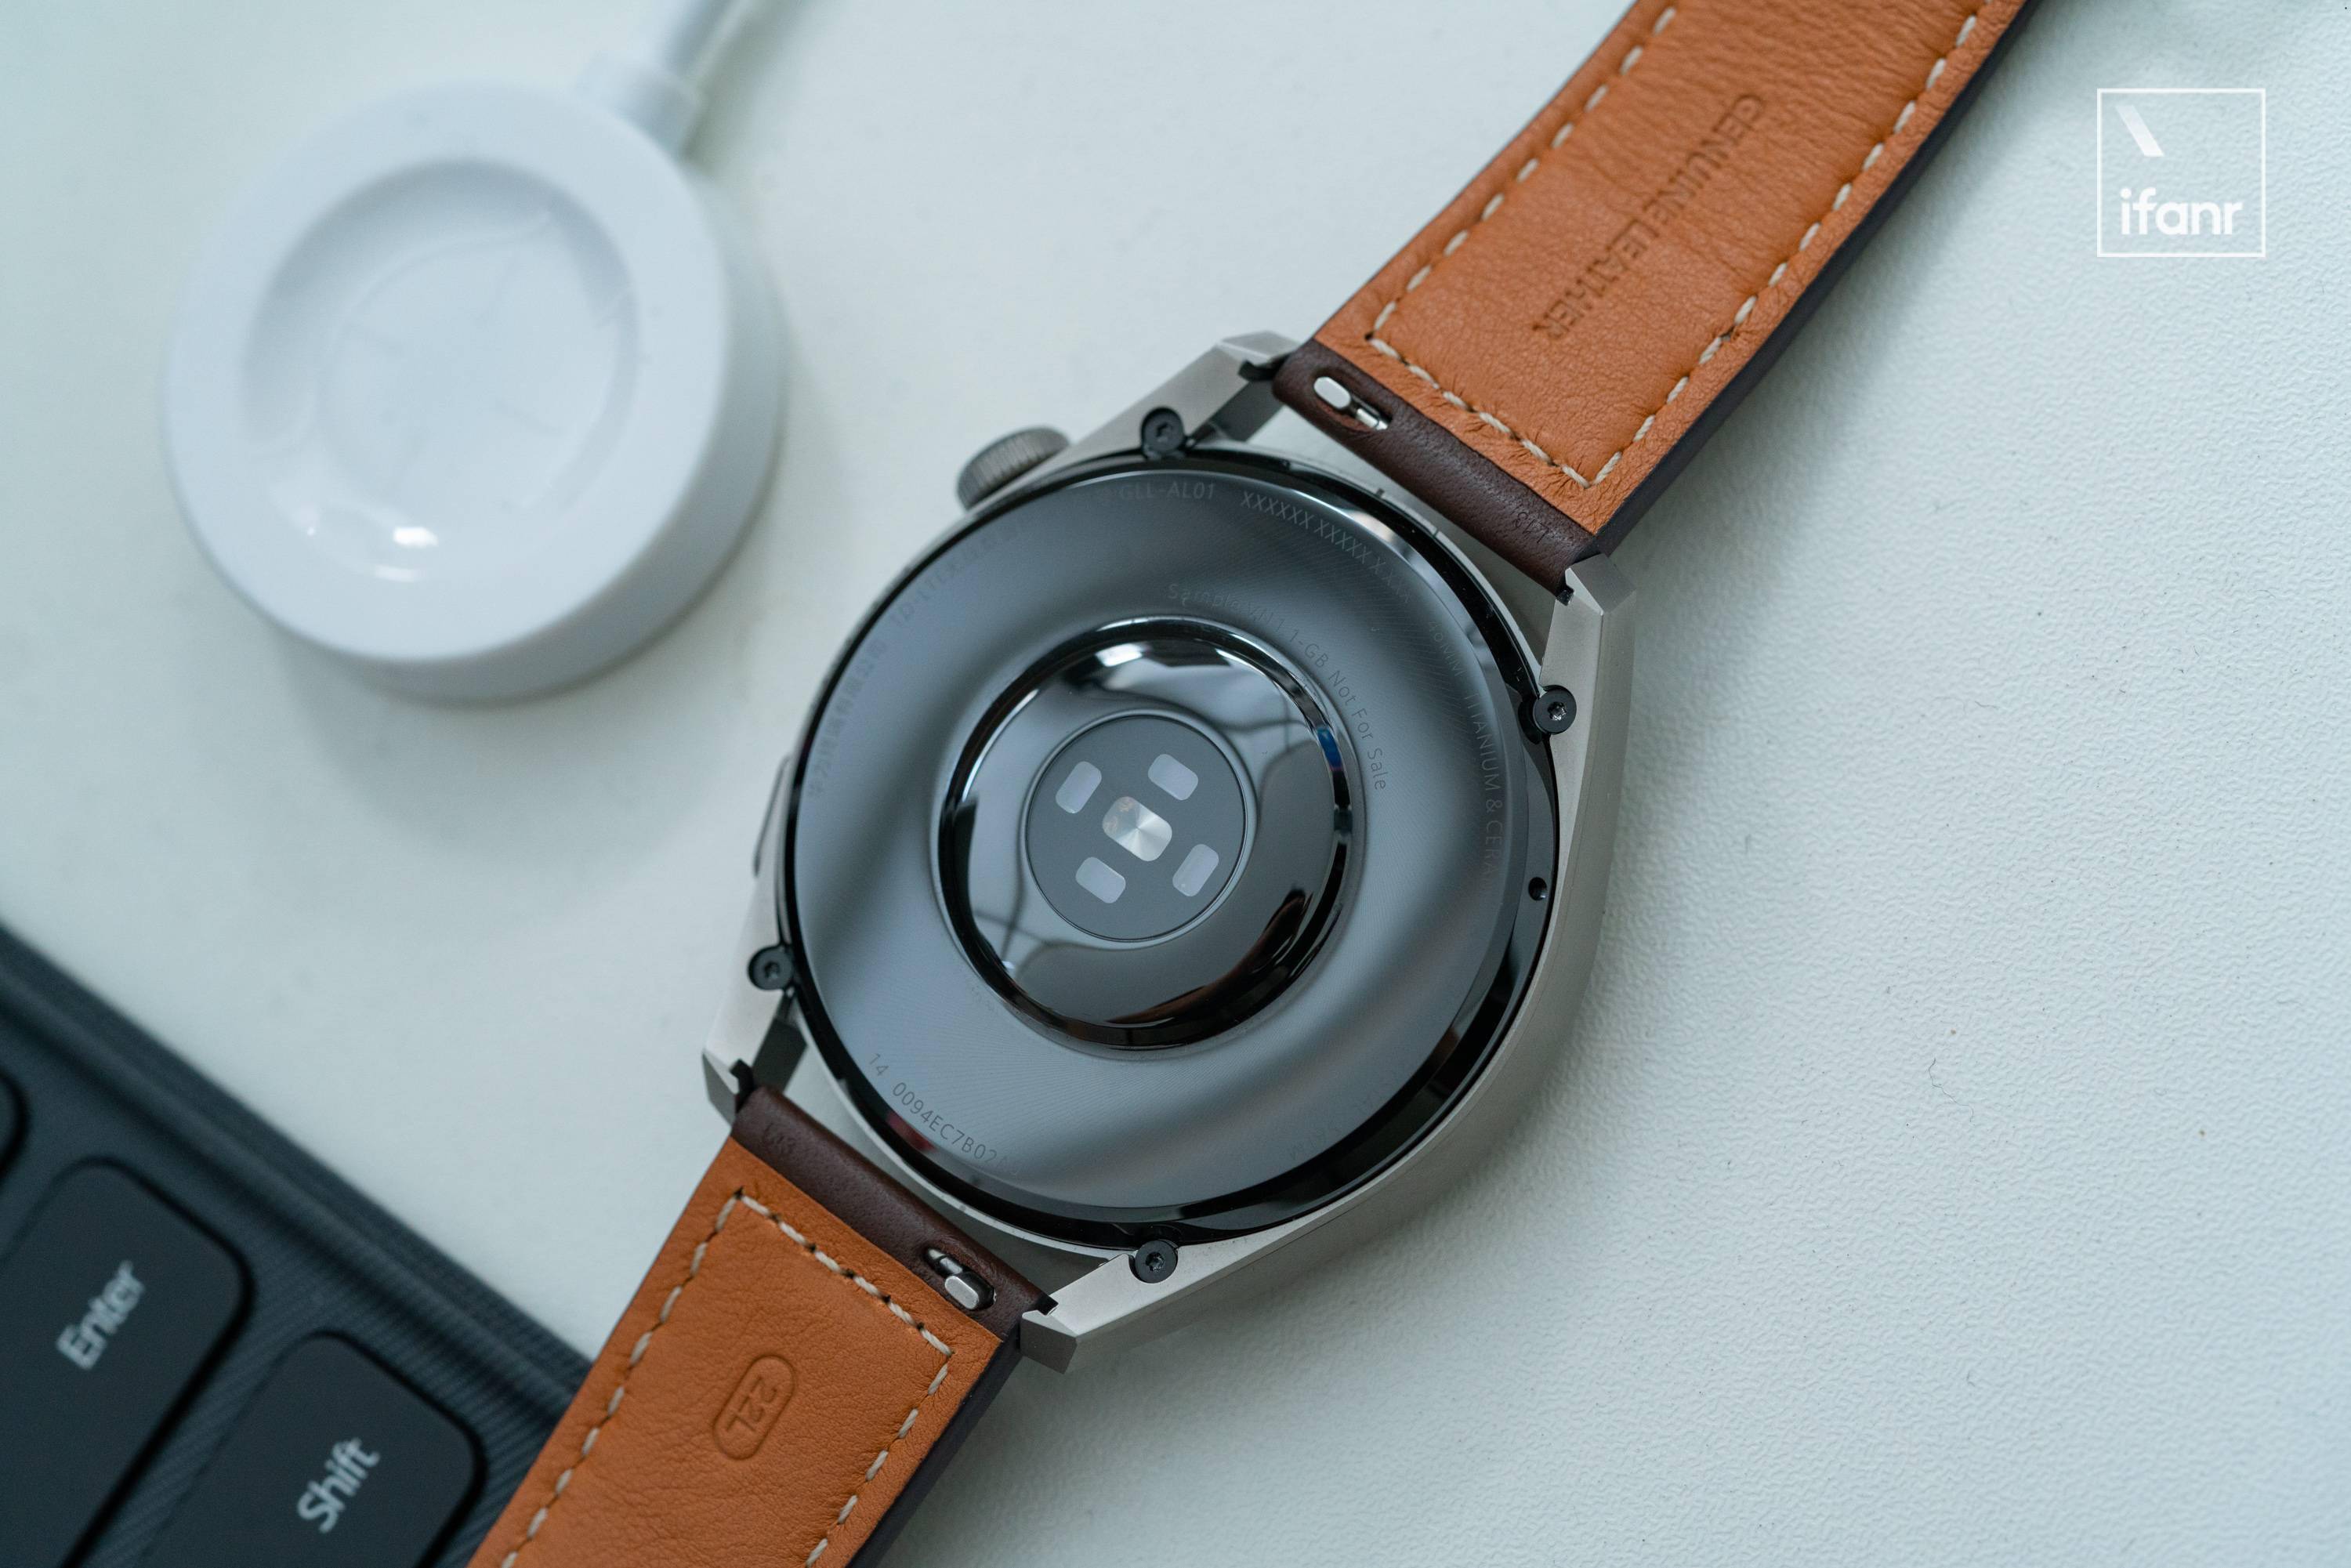 原创华为watch3pro图赏首款鸿蒙手表钛金属表体与陶瓷材质加持